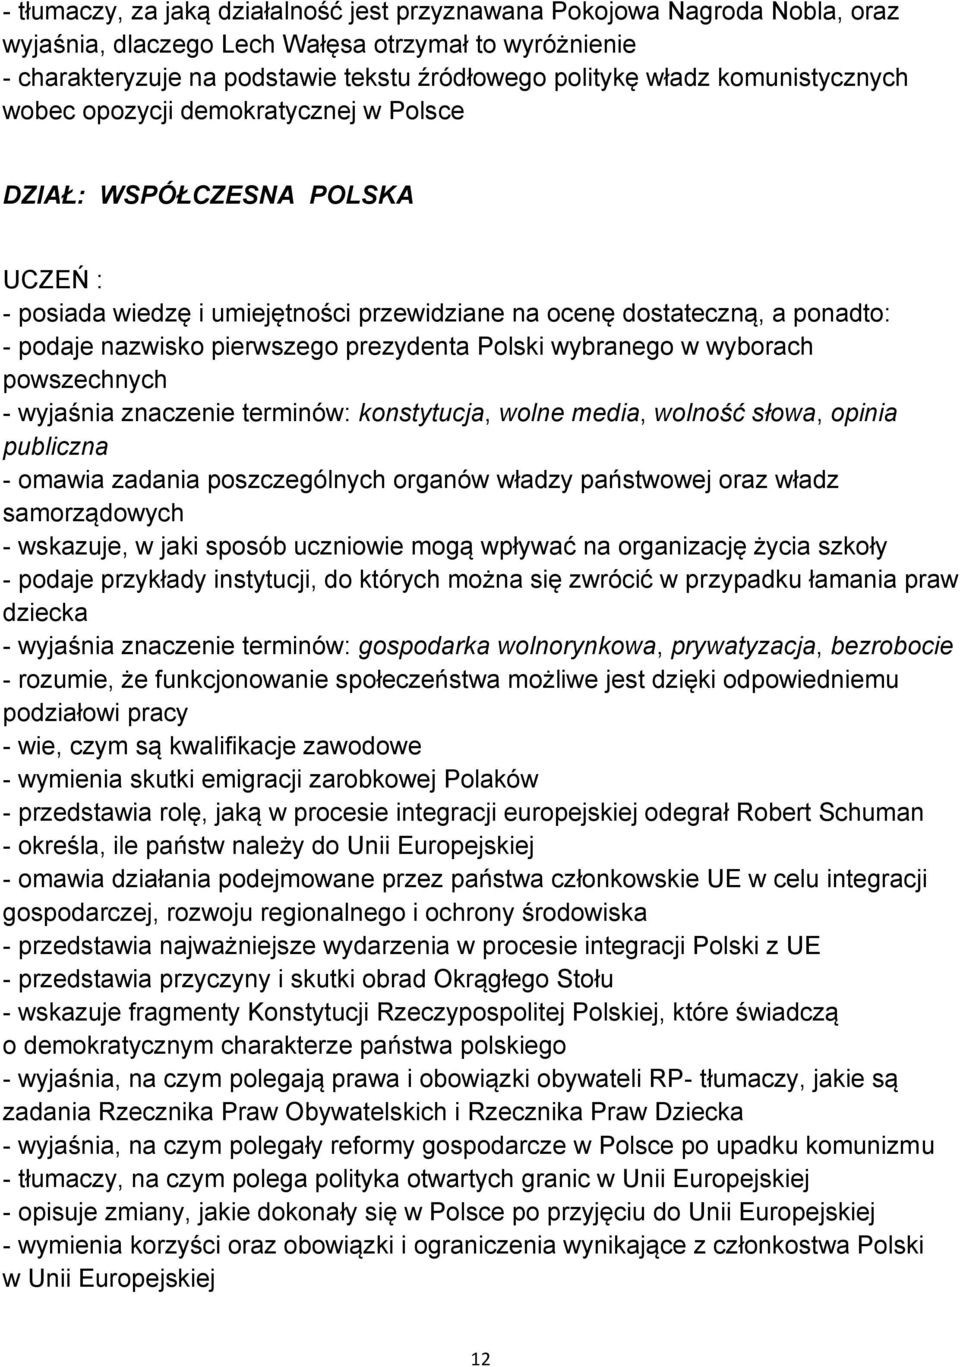 Polski wybranego w wyborach powszechnych - wyjaśnia znaczenie terminów: konstytucja, wolne media, wolność słowa, opinia publiczna - omawia zadania poszczególnych organów władzy państwowej oraz władz